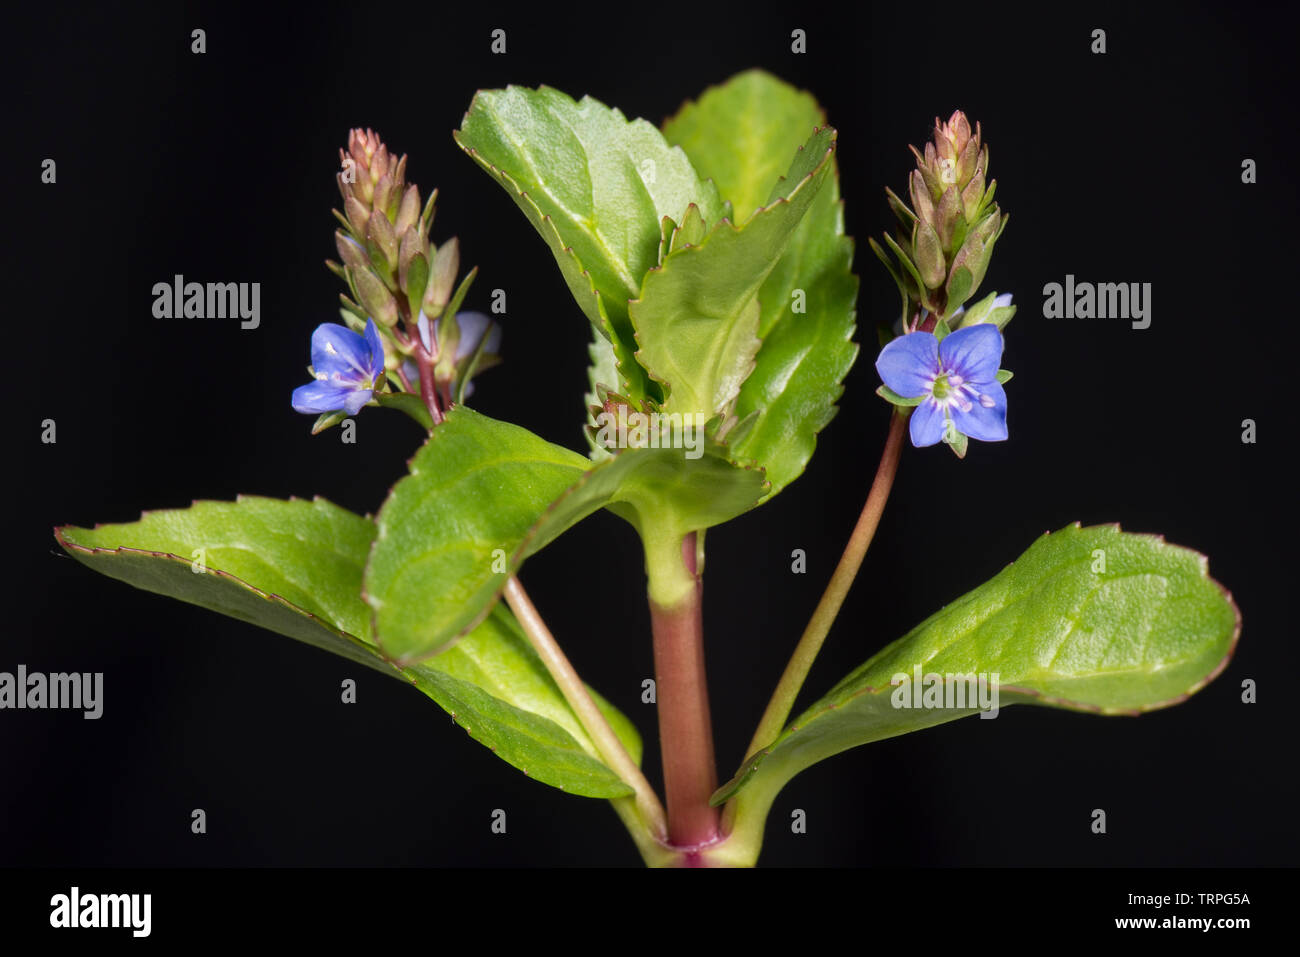 Fleischig saftige Blätter und die blaue Blume der Rn Wasserpflanzen brooklime, Veronica beccabunga, Berkshire, Mai Stockfoto